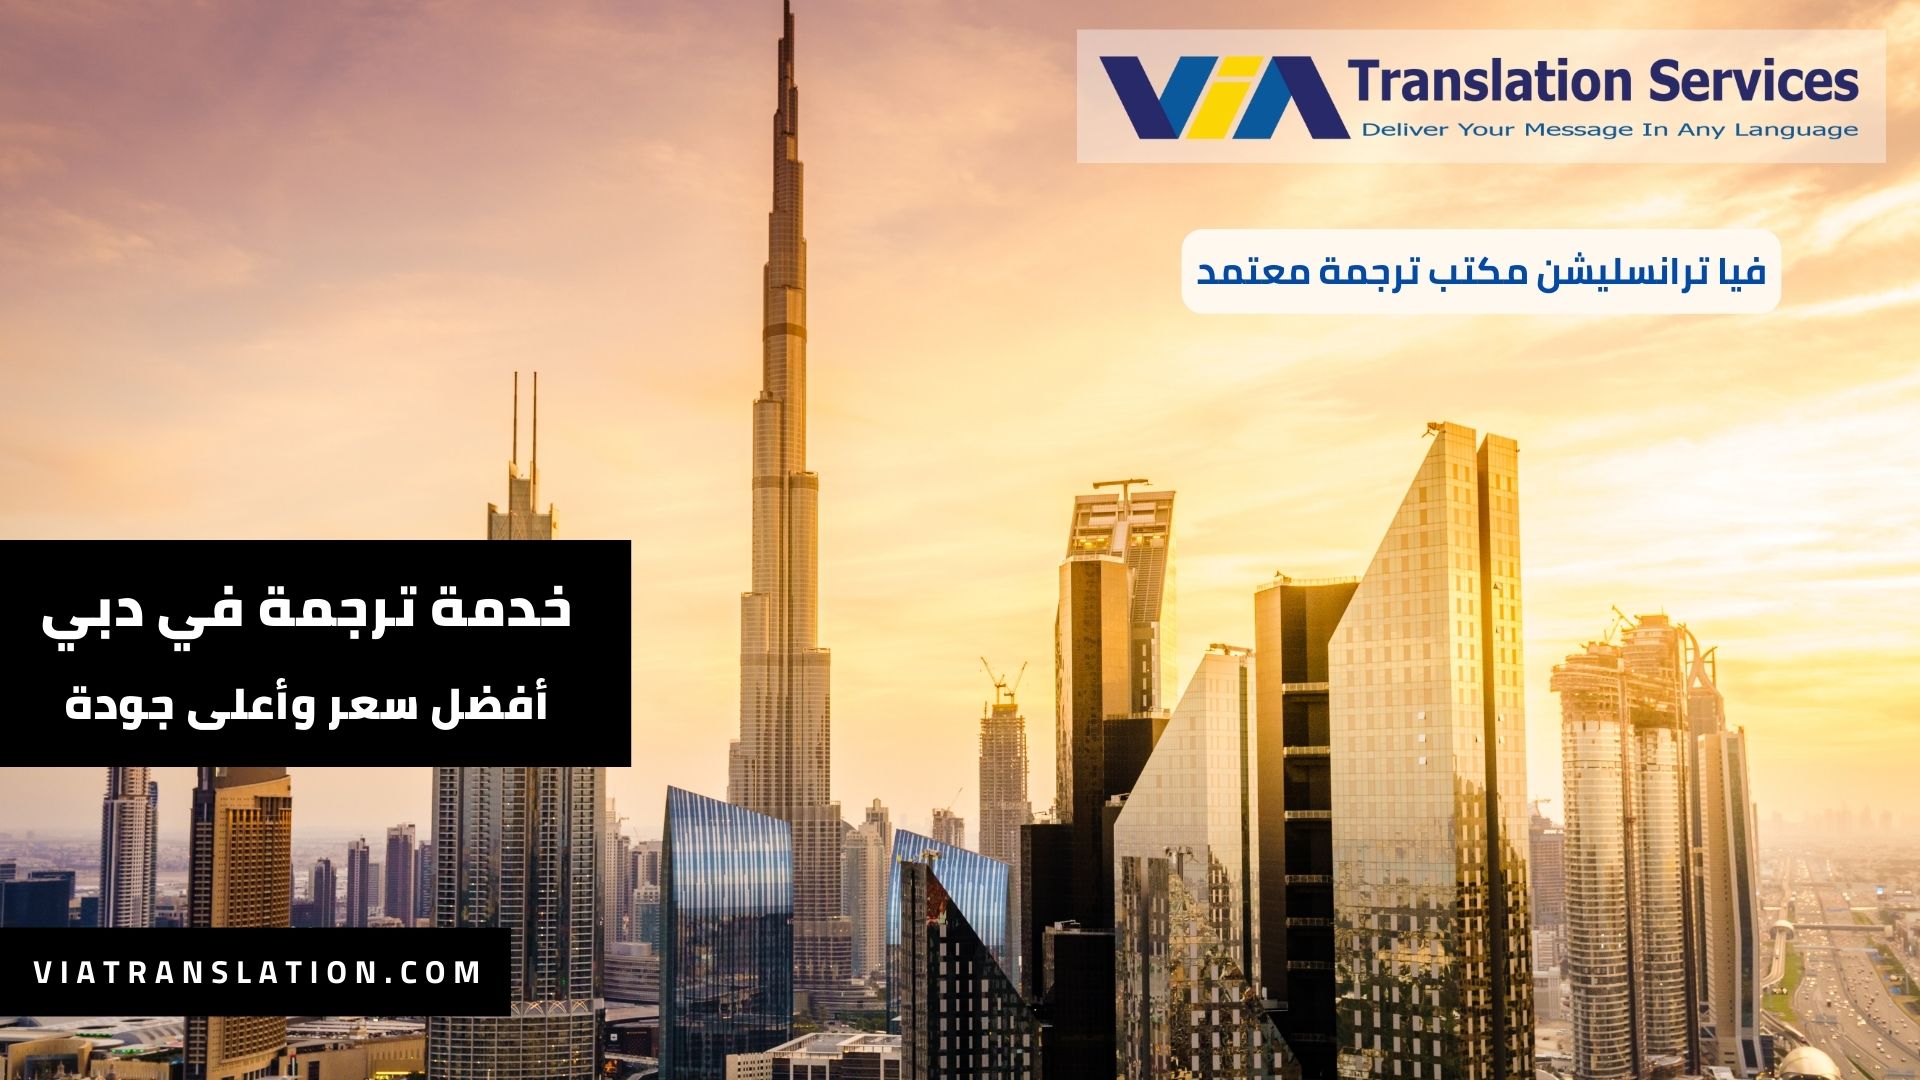 هل تبحث عن خدمة ترجمة في دبي؟